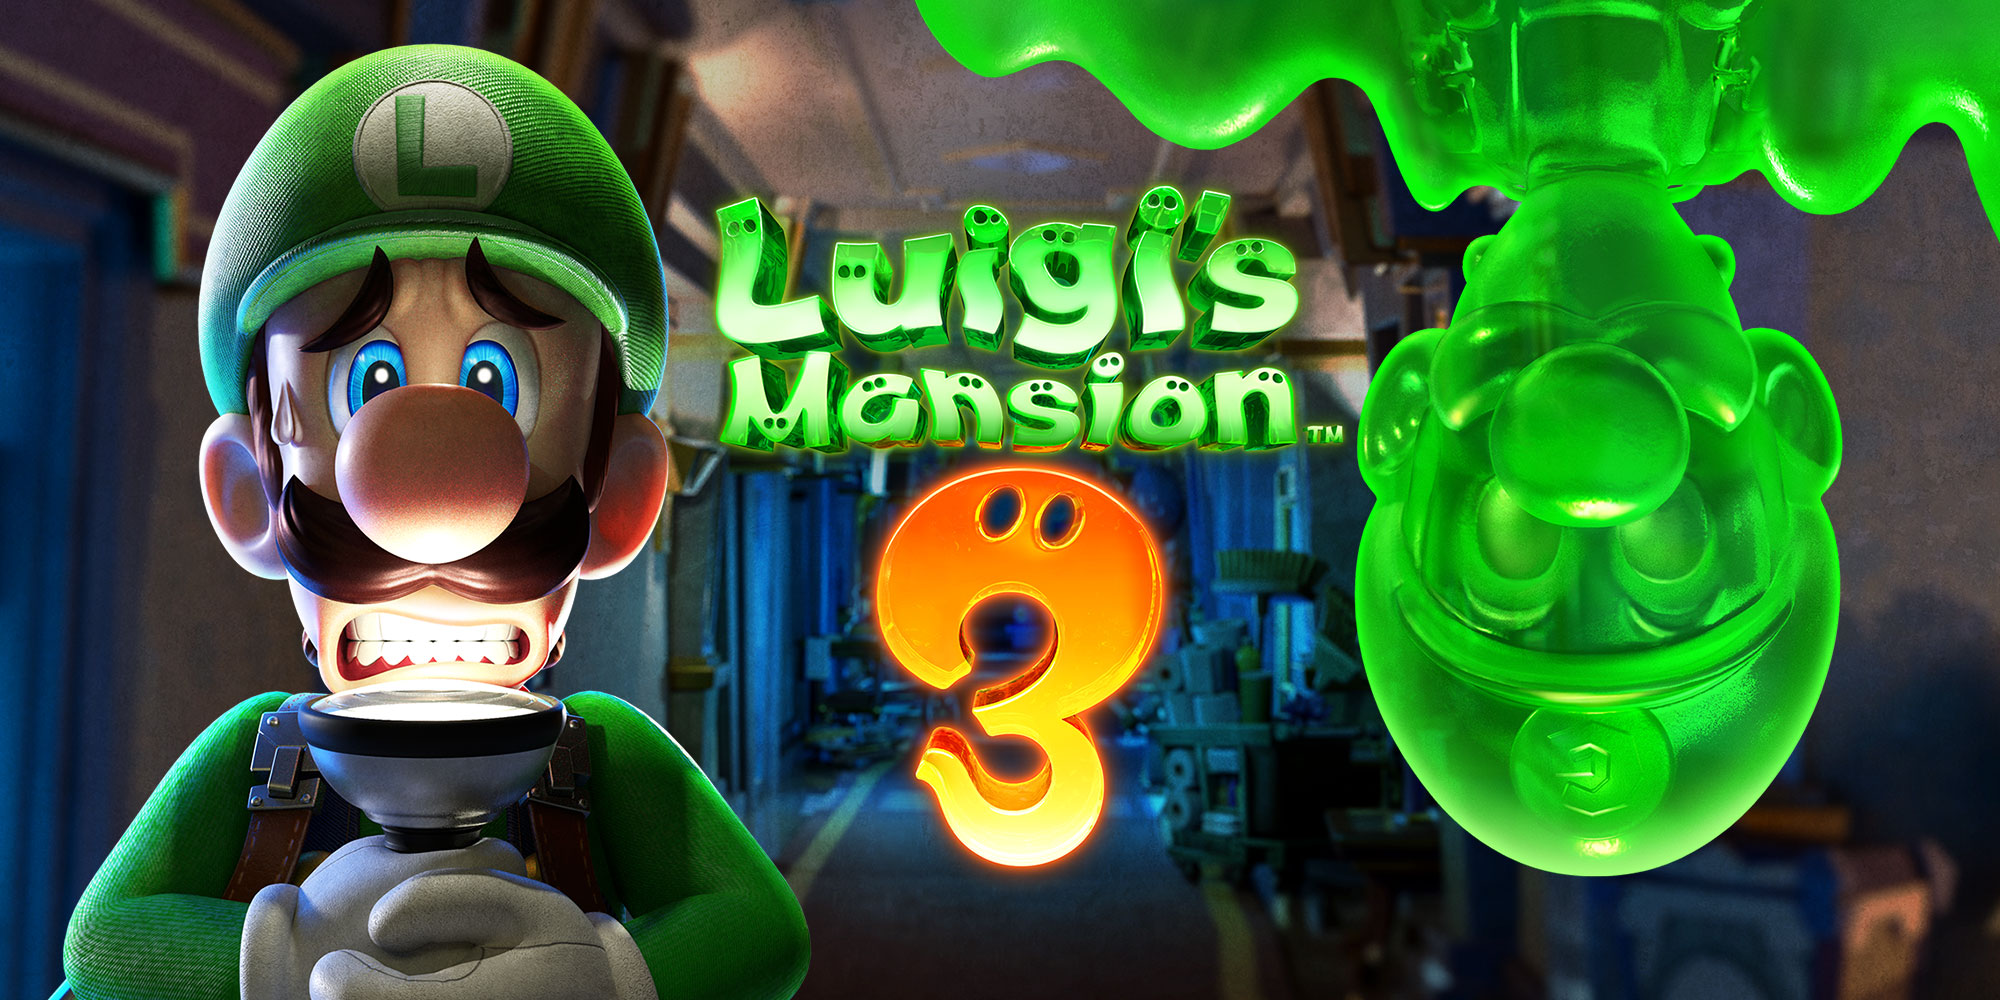 Preparati a saltare sulla sedia! Luigi's Mansion 3 infesterà Nintendo Switch dal 31 ottobre!